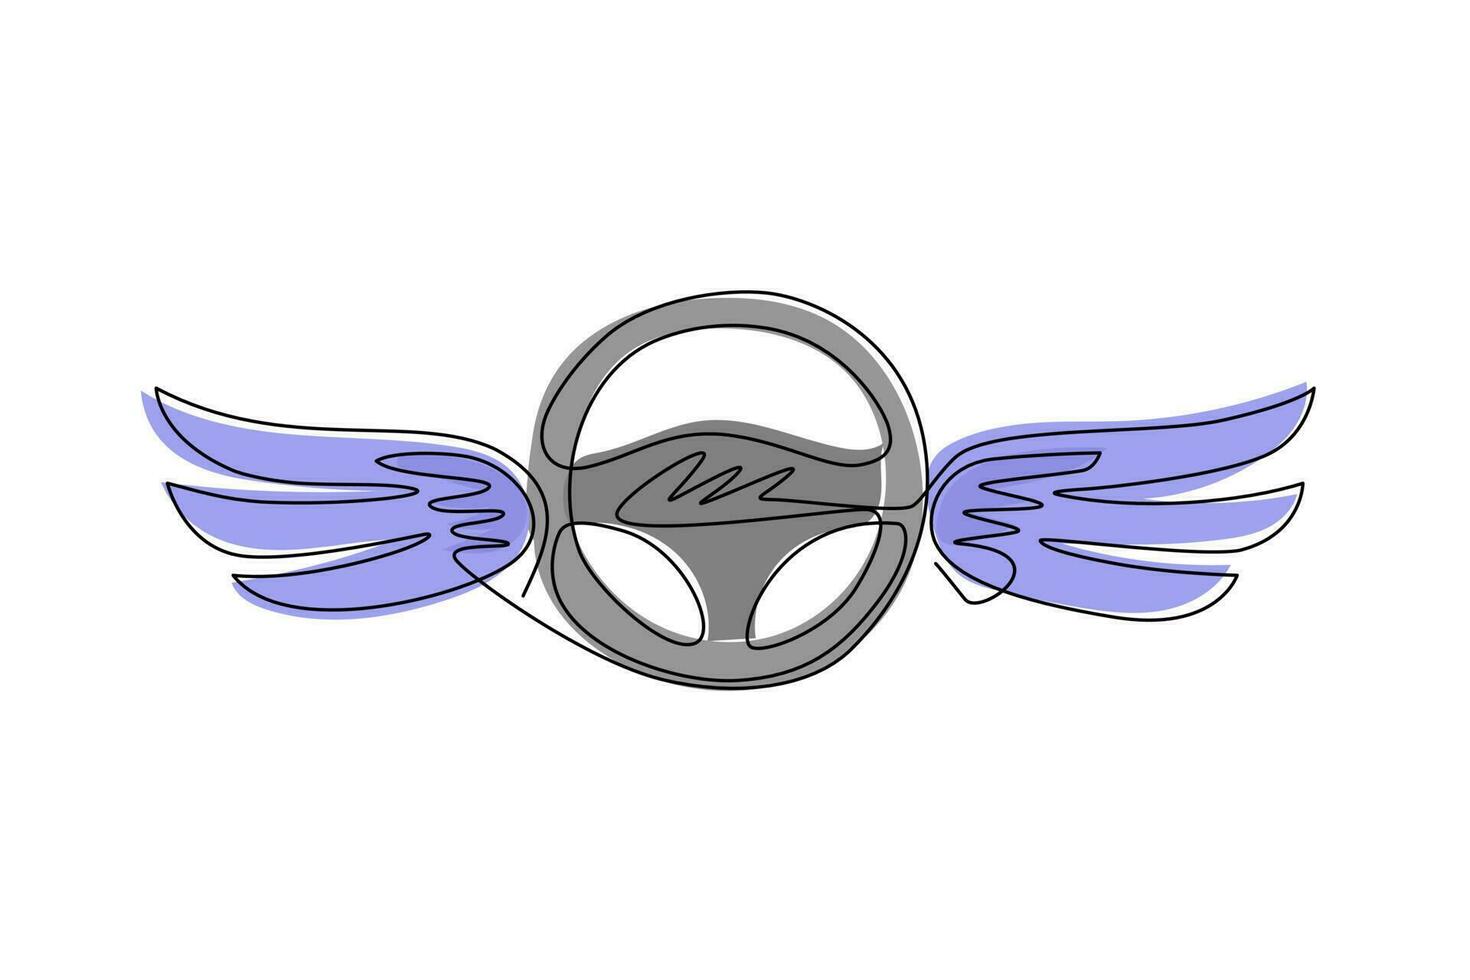 kontinuerlig en rad ritning ratt med vingar. körskolans logotyp eller symbol. design platt element för emblem, klistermärke, badge, etikett, ikon. enda rad rita design vektorgrafisk illustration vektor